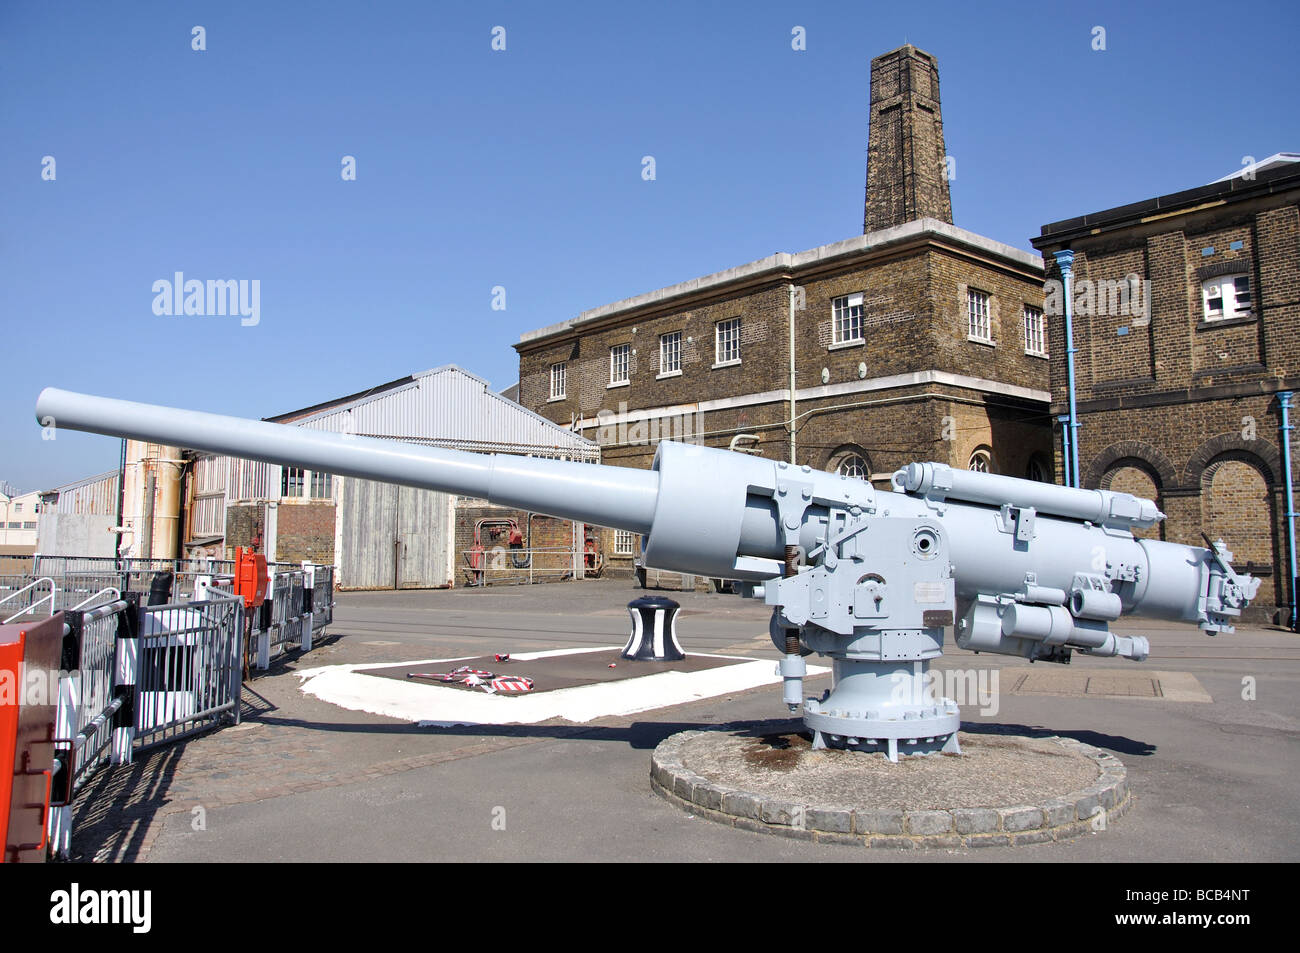 Vieux canon naval, Cran-gevrier, Chatham, Kent, Angleterre, Royaume-Uni Banque D'Images